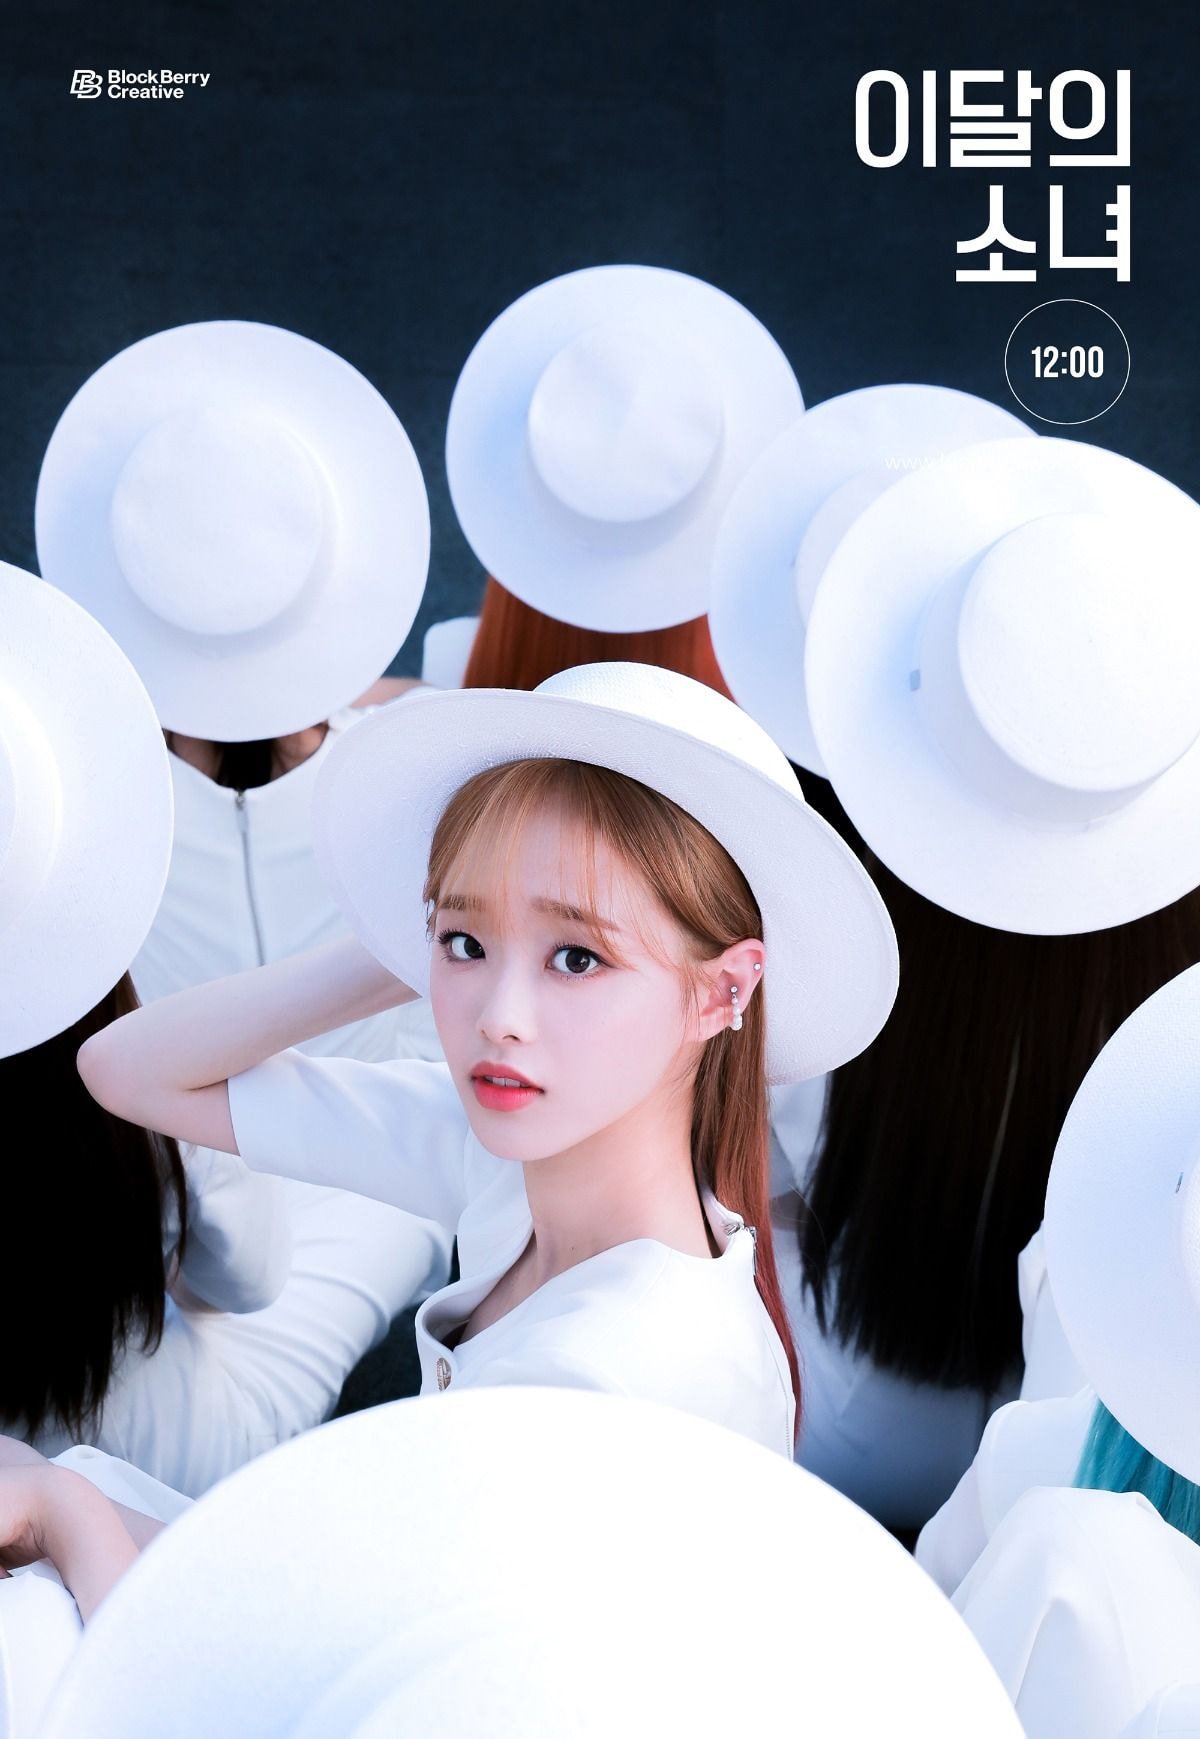 이달의 소녀 (LOONA) [12:00] 2nd Concept Photo 비비, 이브, 츄